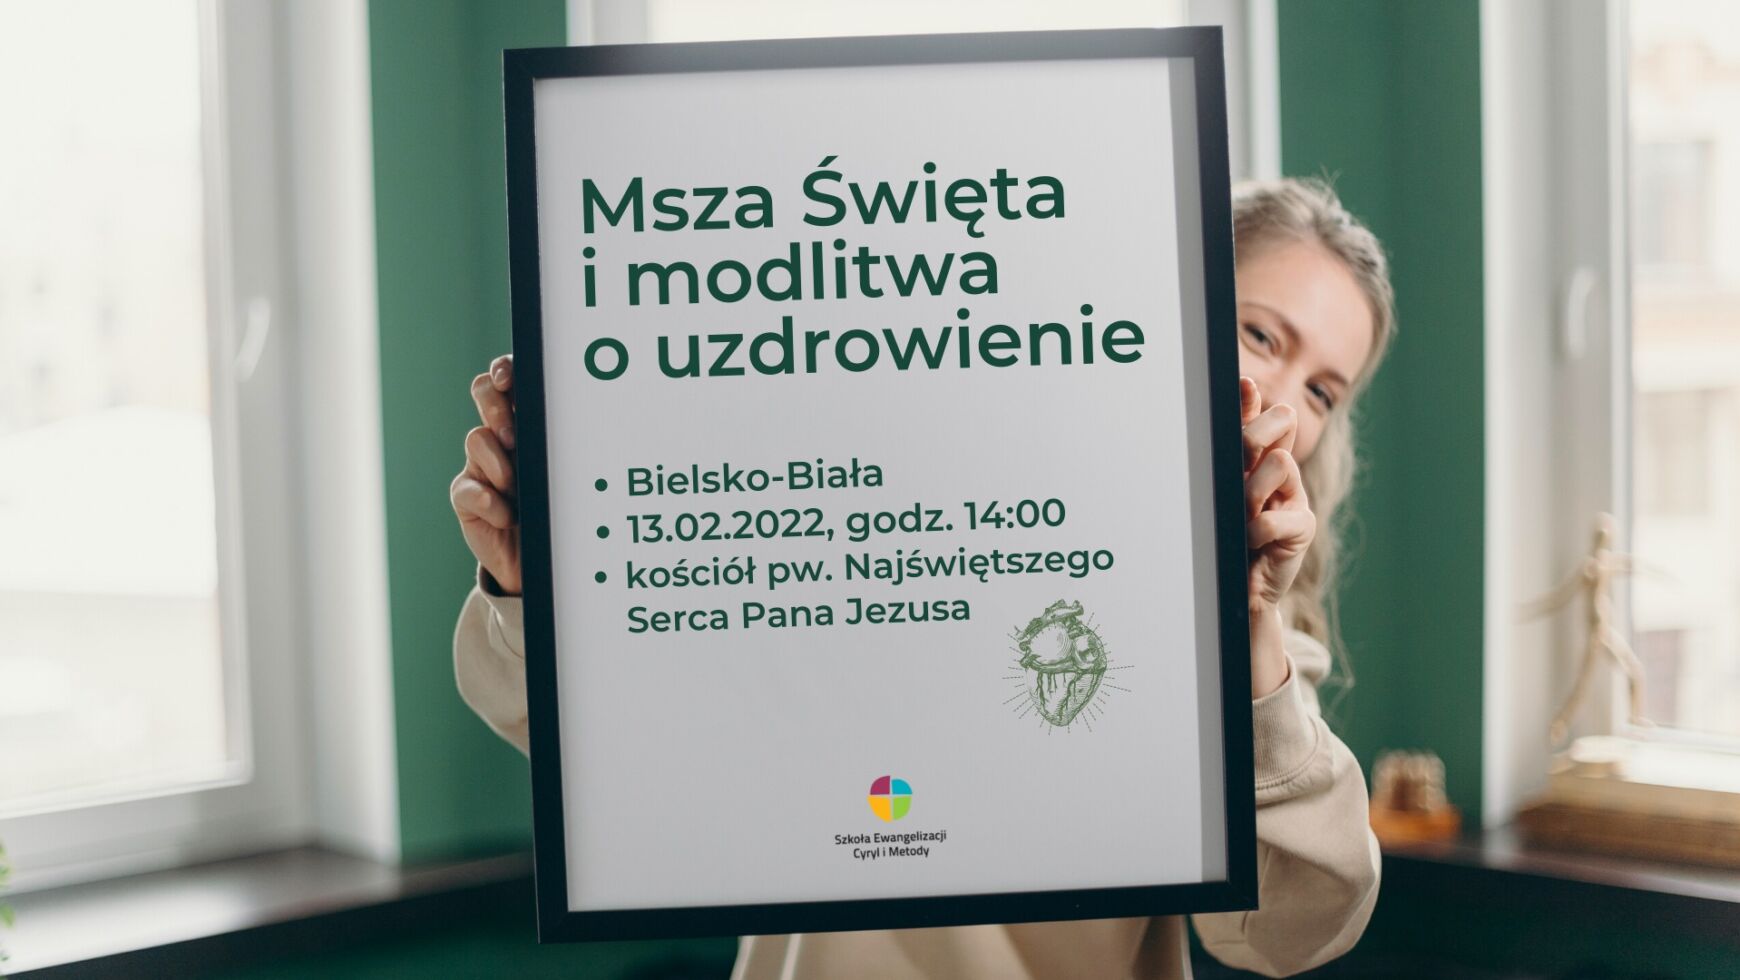 Msza Święta i modlitwa o uzdrowienie, Bielsko-Biała 13.02.2022